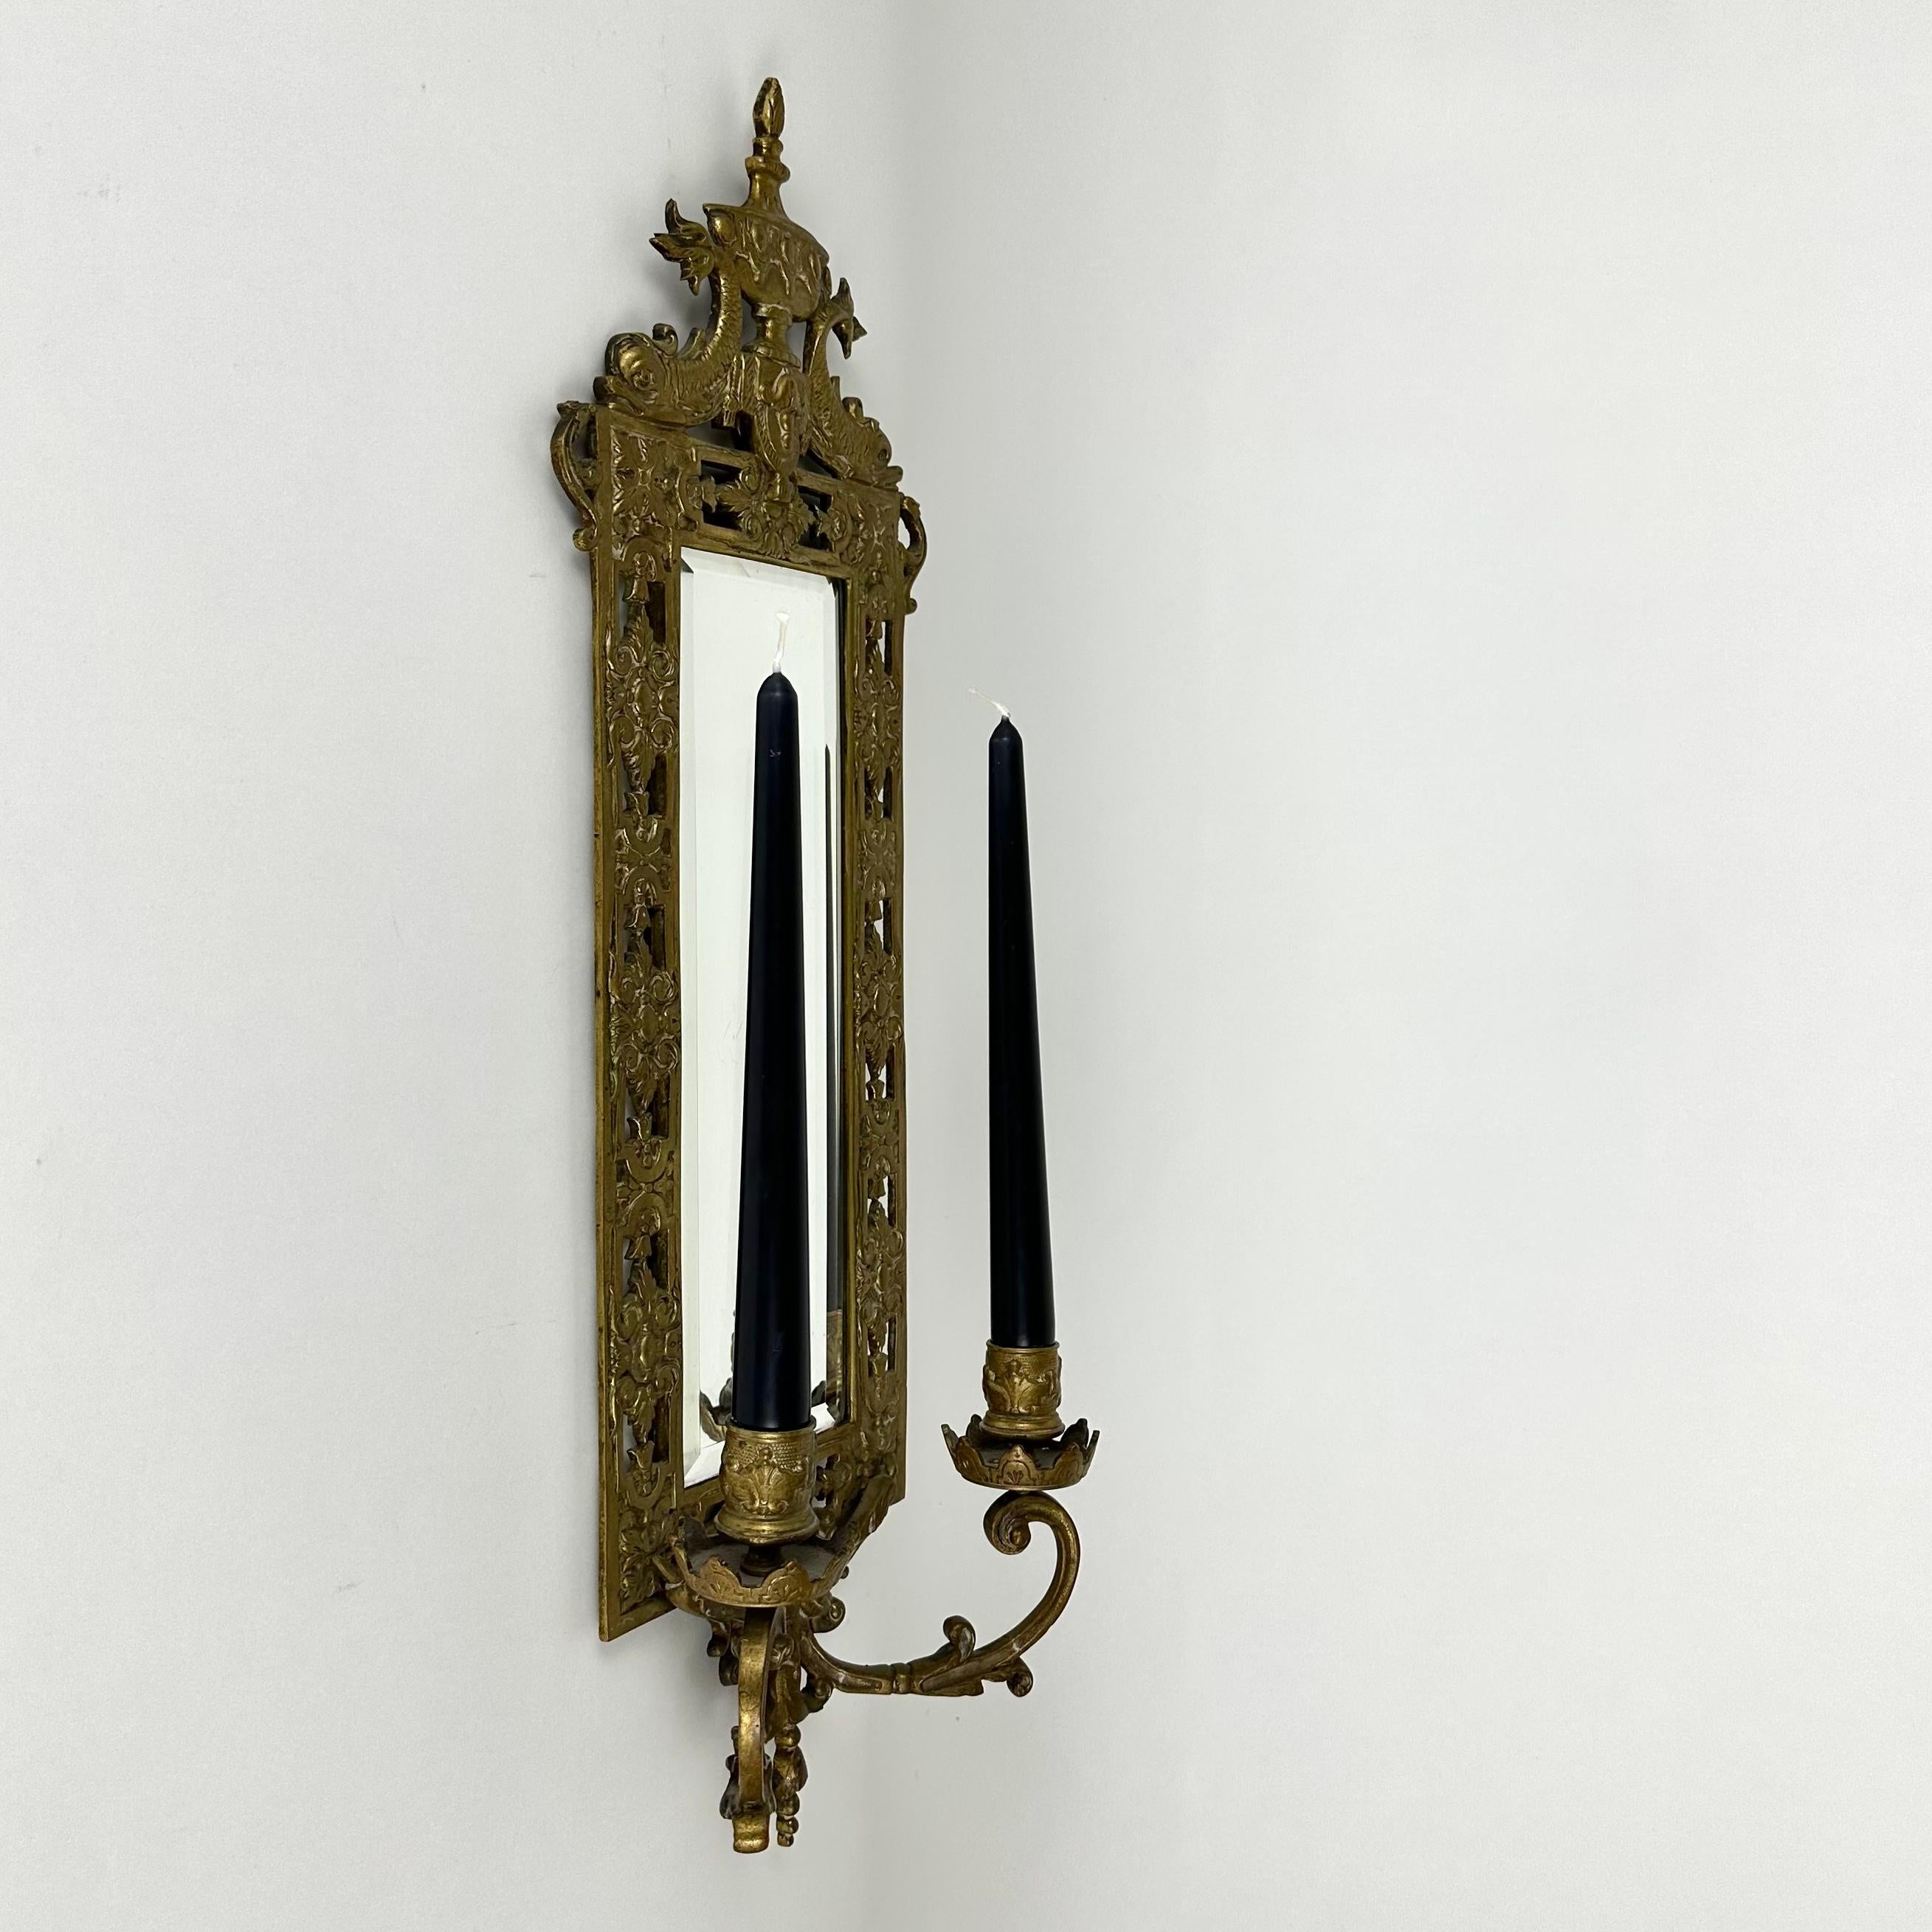 Eine klassische verspiegelte Leuchte in rechteckiger Form. Frankreich, 1910er Jahre.

Das obere Ornament zeigt zwei klassische Delphine.

Zwei Arme an der Unterseite zur Aufnahme von Kegelkerzen.

Der Spiegel ist abgeschrägt und hat Altersflecken